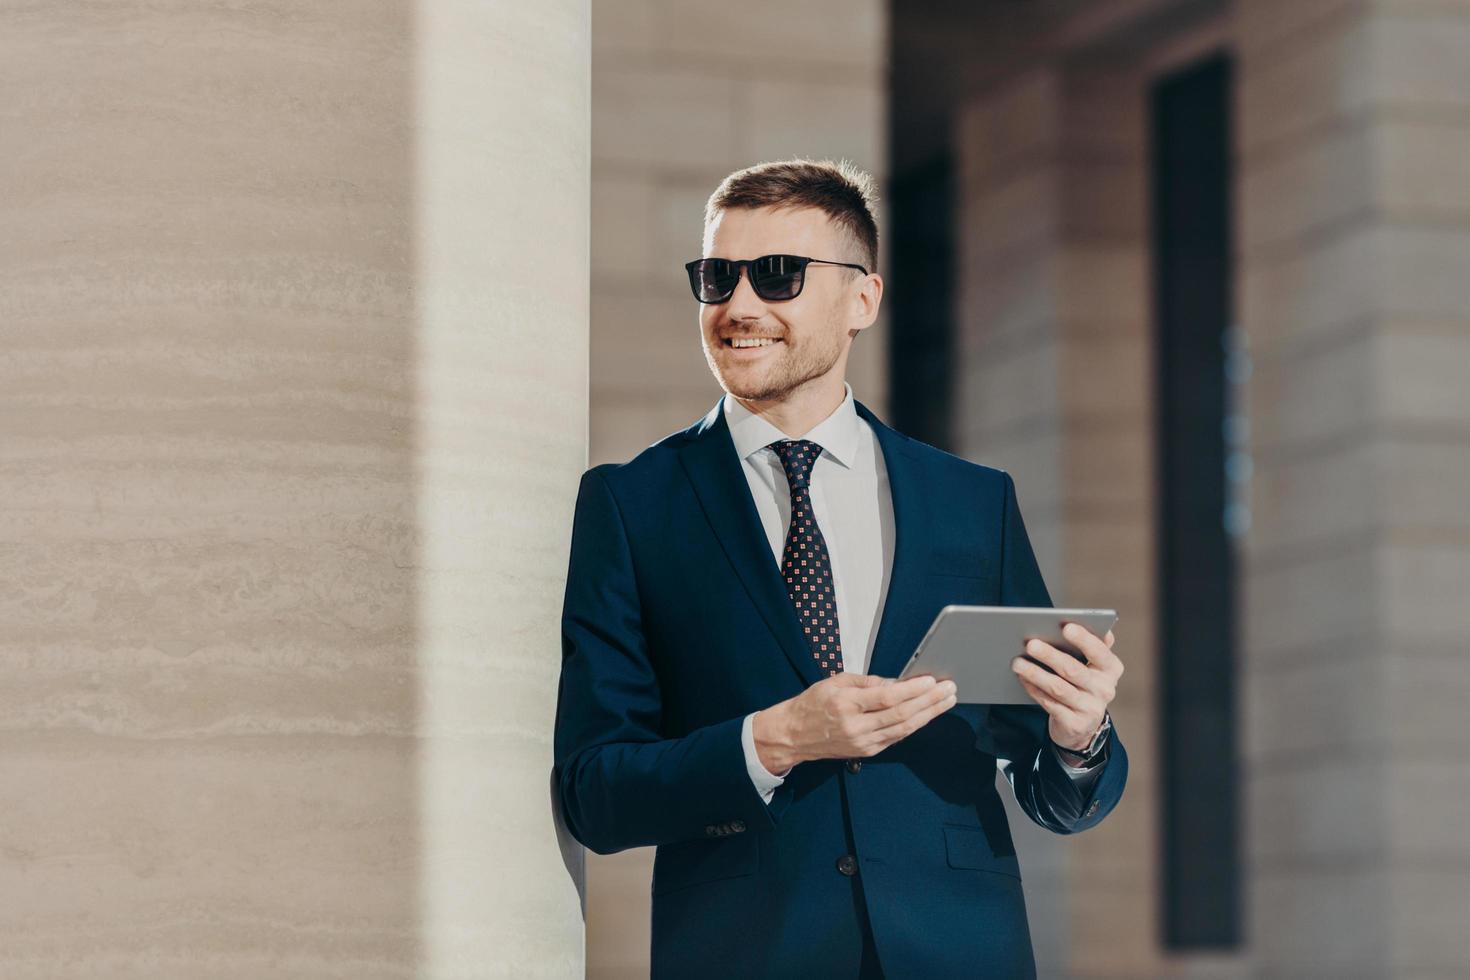 el retrato de un apuesto joven empleador sostiene una tableta digital, está conectado a Internet inalámbrico, usa gafas de sol y traje formal, tiene tiempo libre después de un duro día de trabajo. personas y concepto de carrera foto